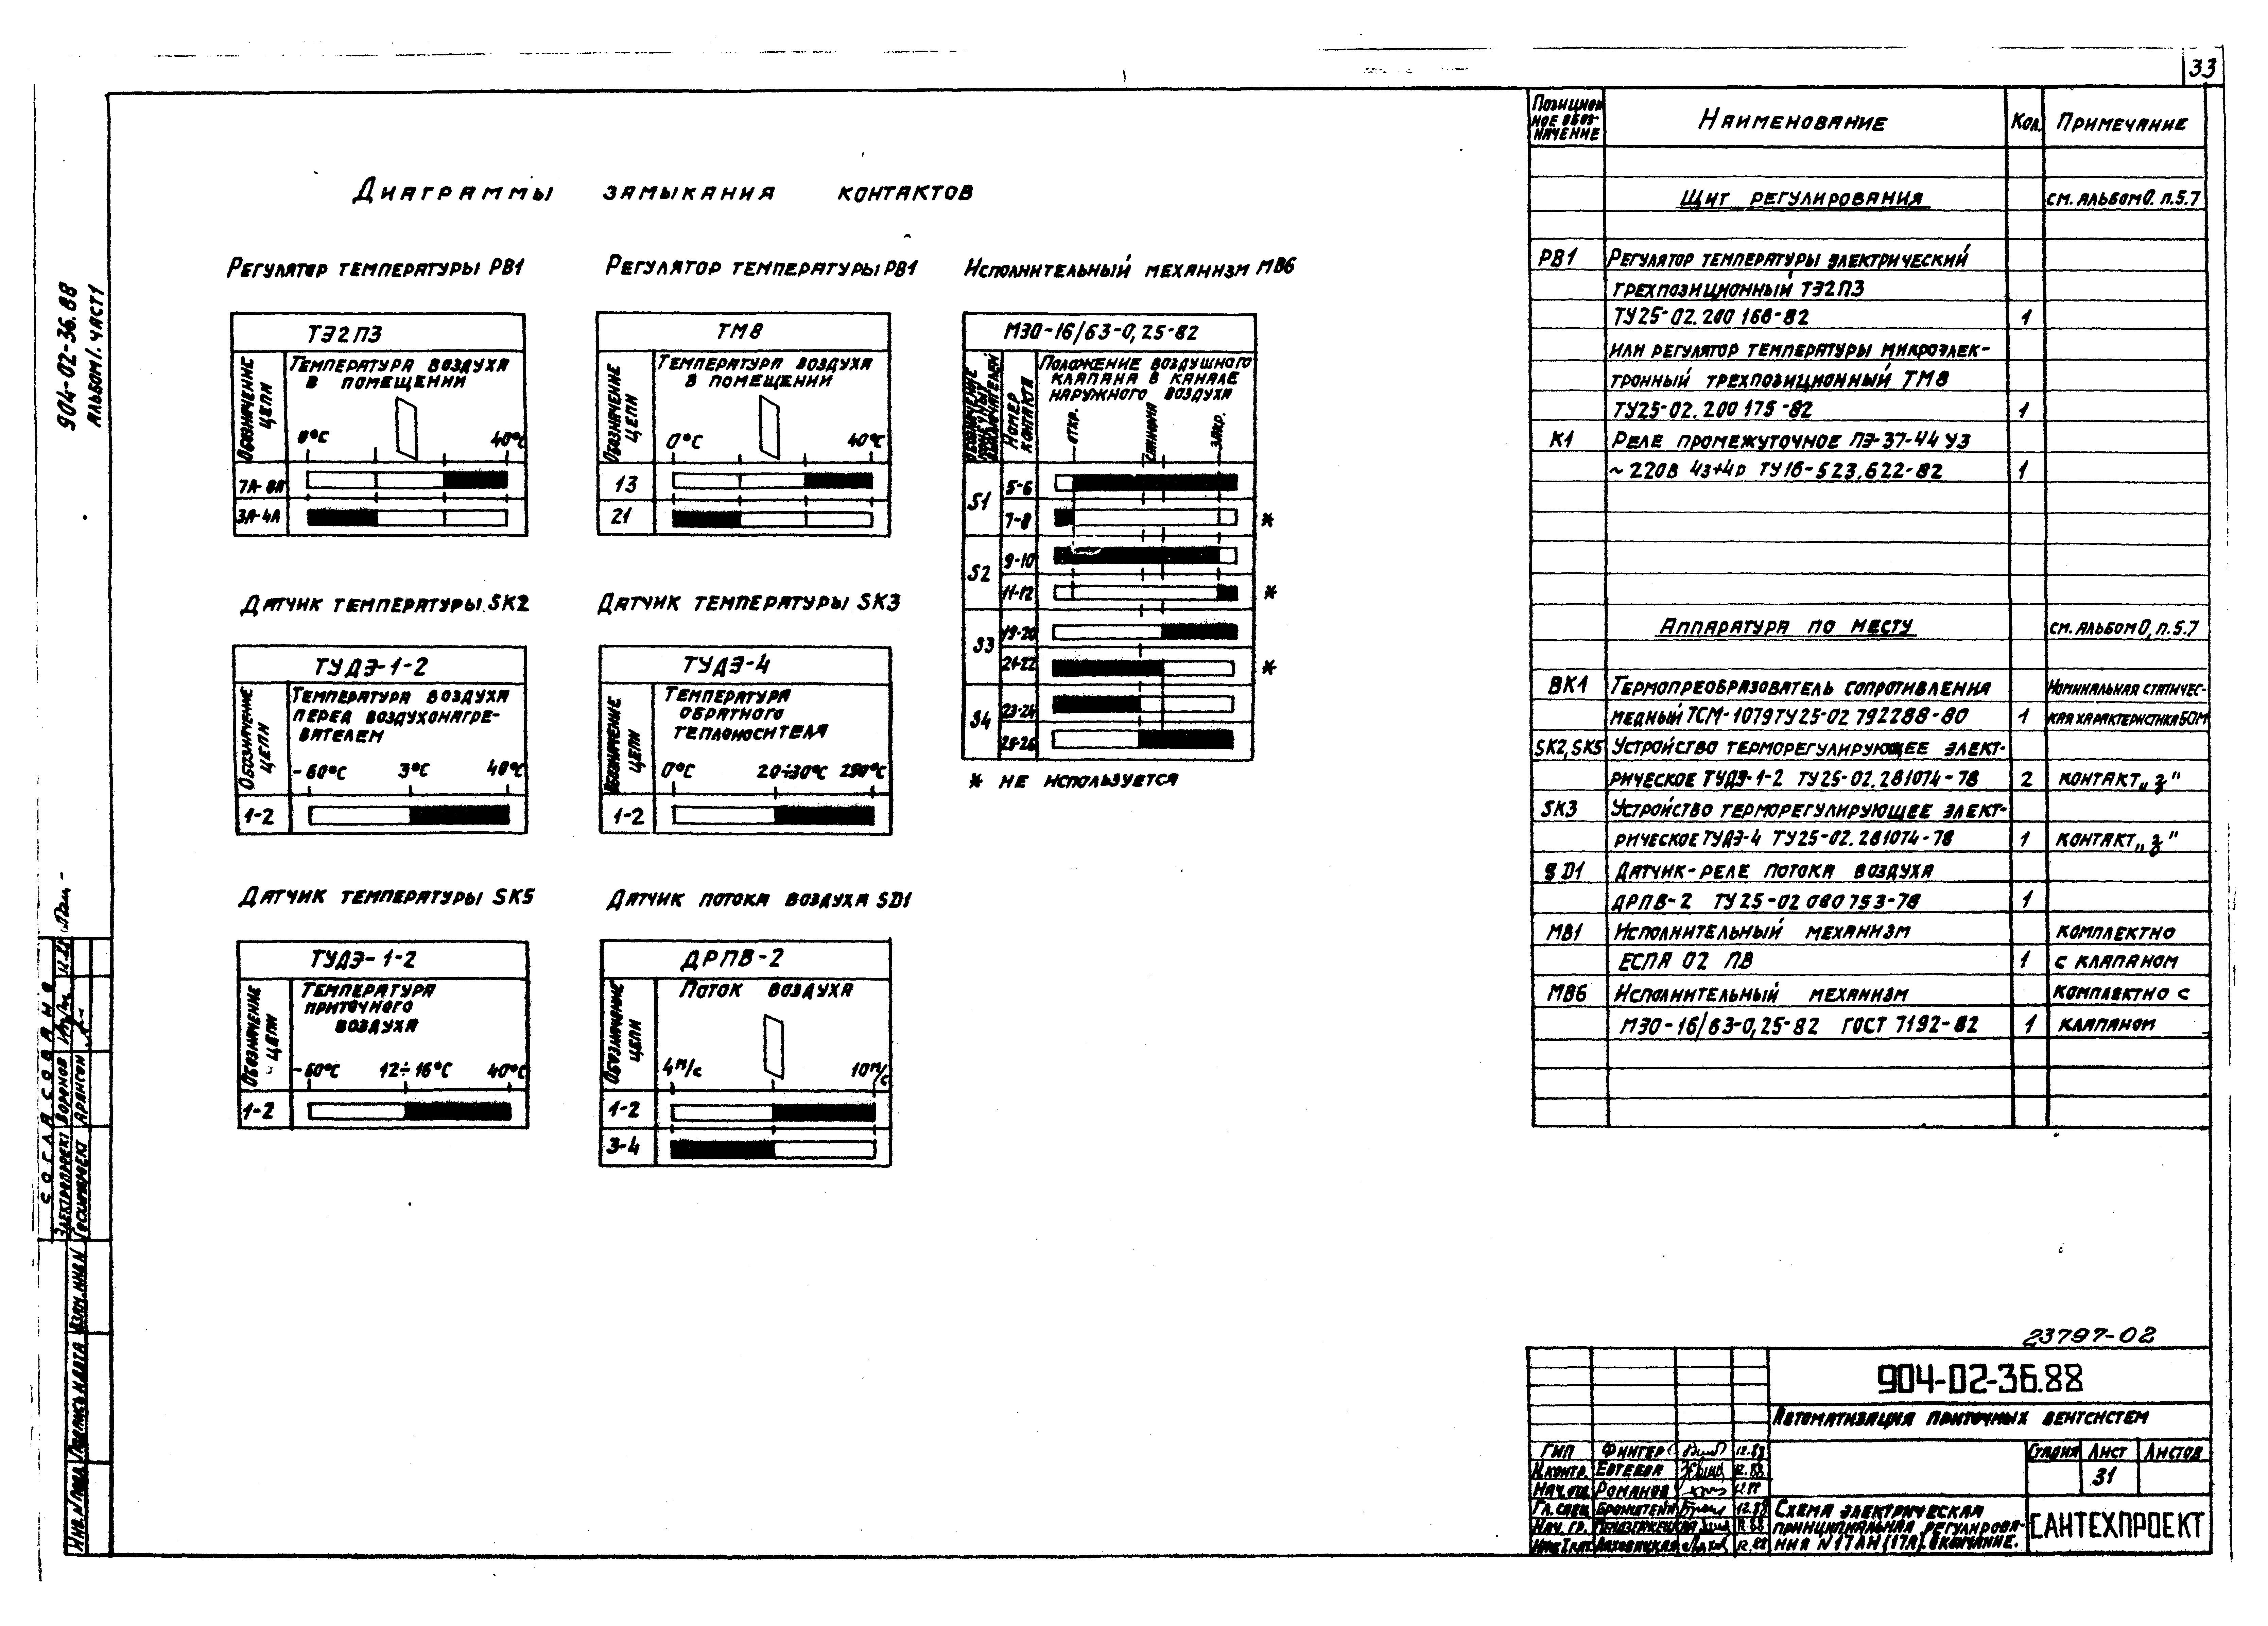 Типовые материалы для проектирования 904-02-36.88